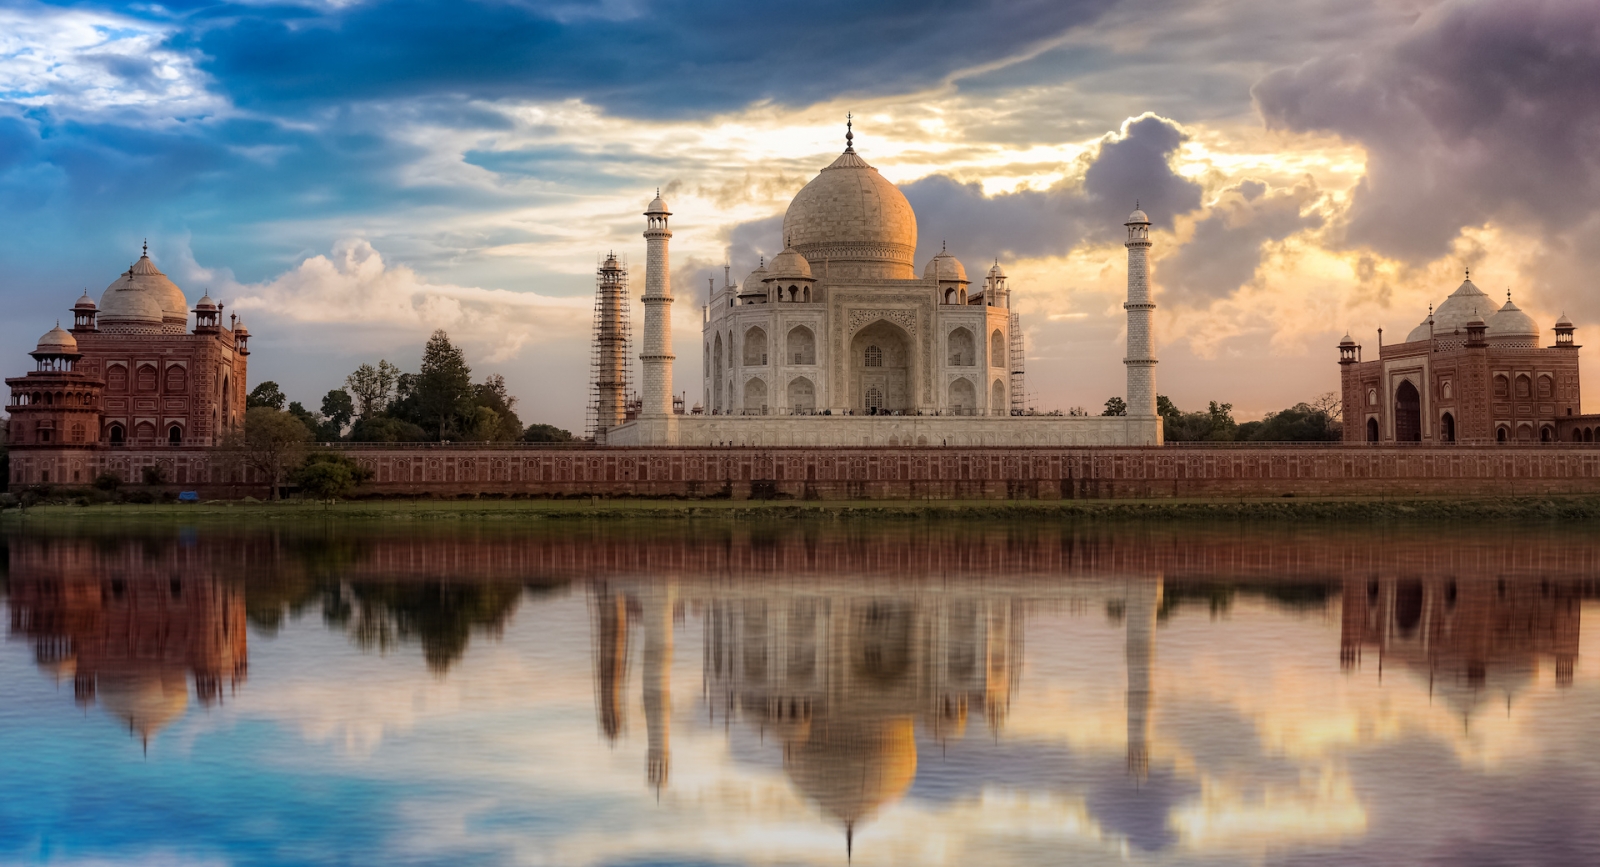 Vue du coucher de soleil sur le Taj Mahal depuis Mehtab Bagh sur les rives de la rivière Yamuna.  Taj Mahal est un mausolée en marbre blanc désigné comme site du patrimoine mondial de l'UNESCO à Agra